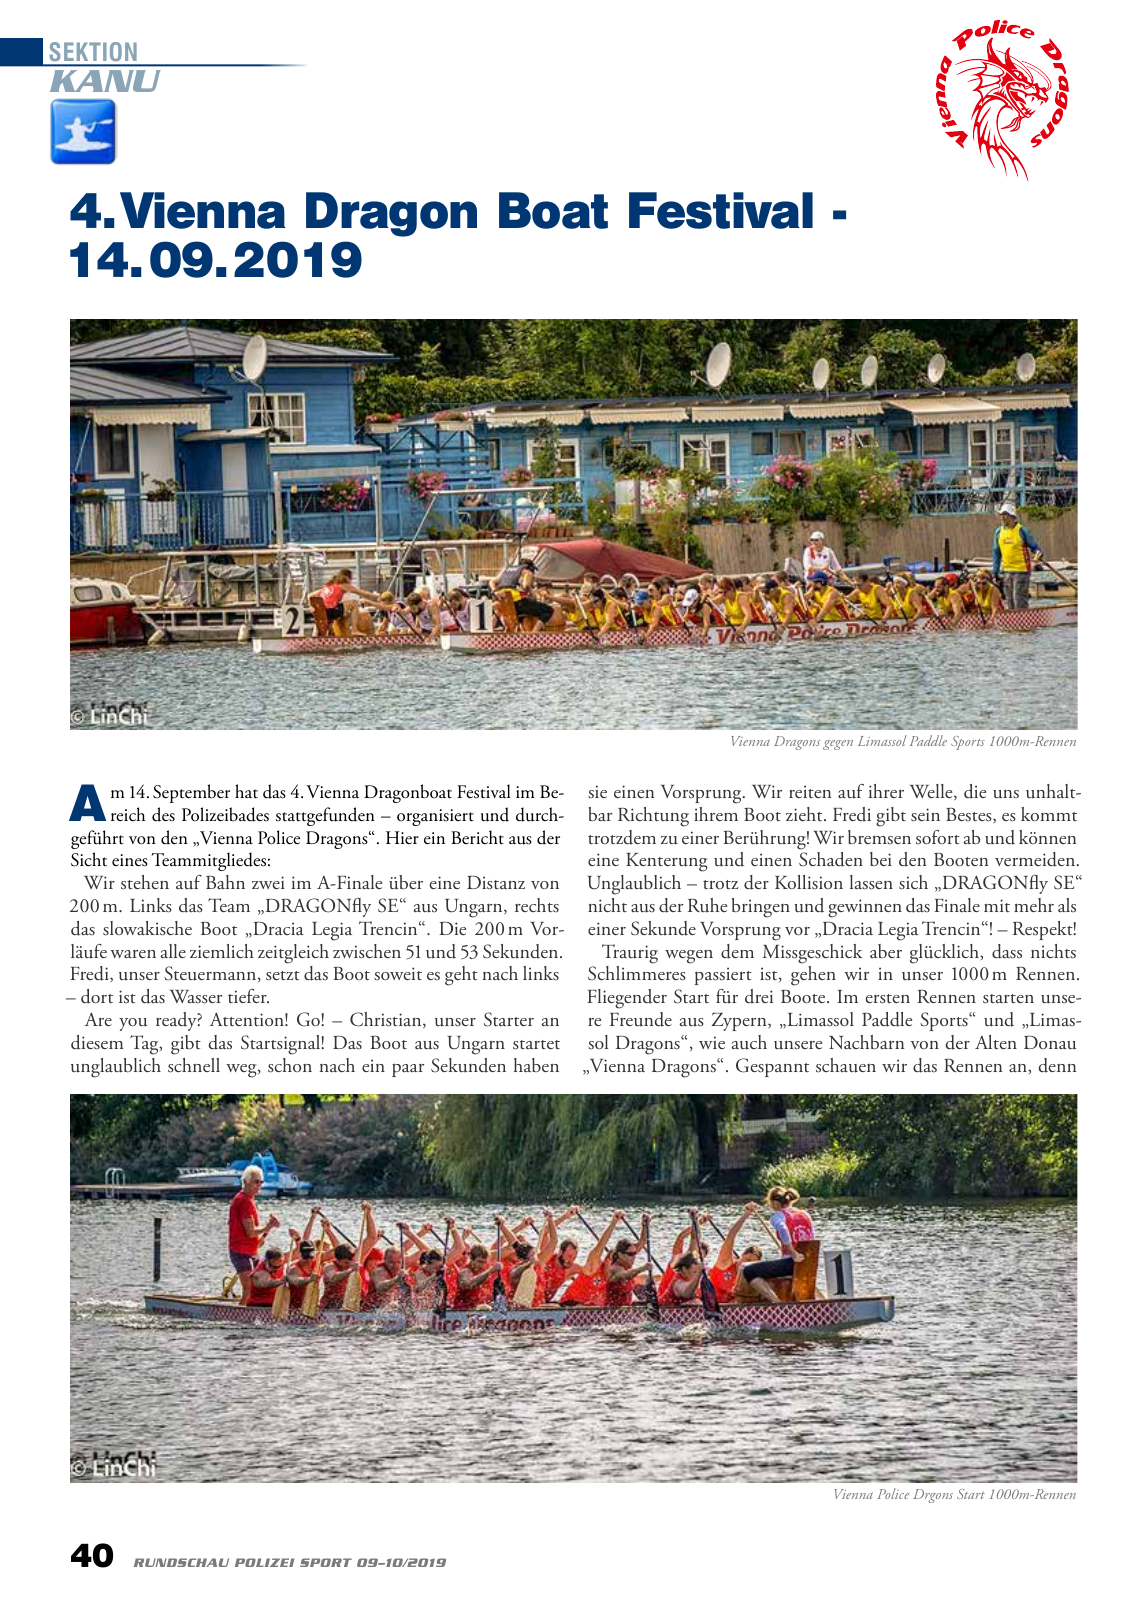 Vorschau Rundschau Polizei Sport 09-10/2019 Seite 40